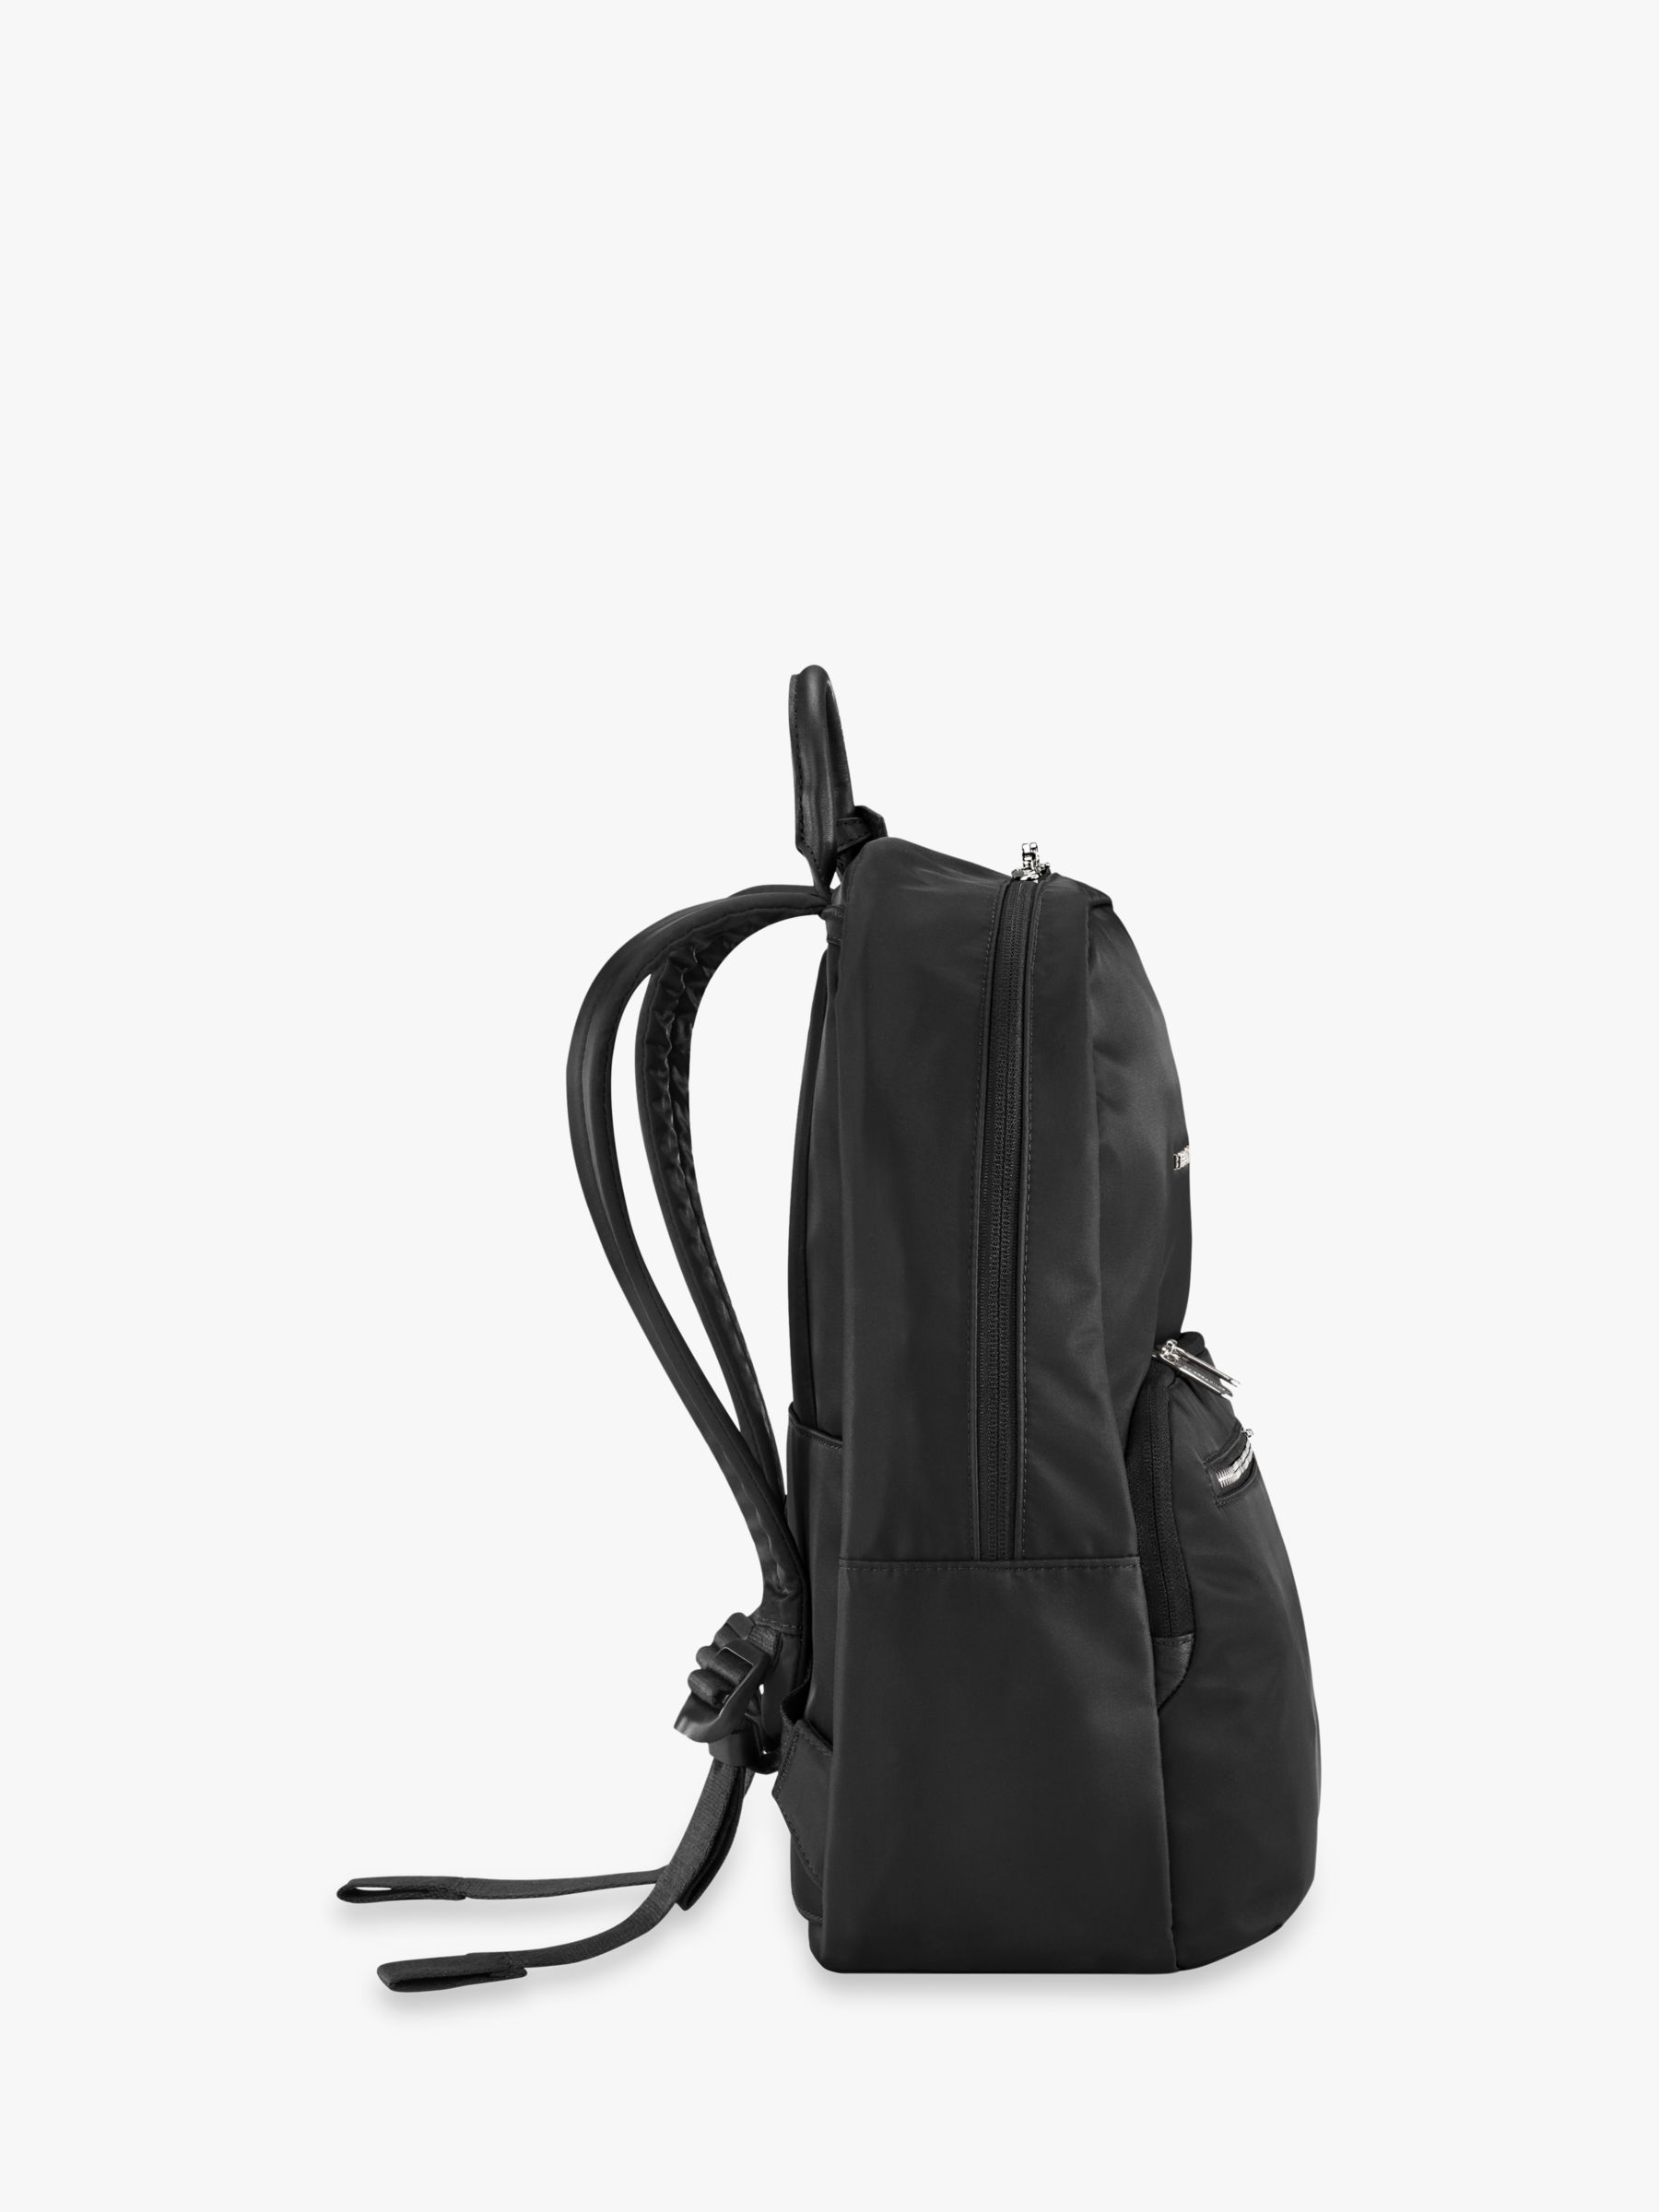 Briggs & Riley Rhapsody Essential Backpack, Black at John Lewis & Partners